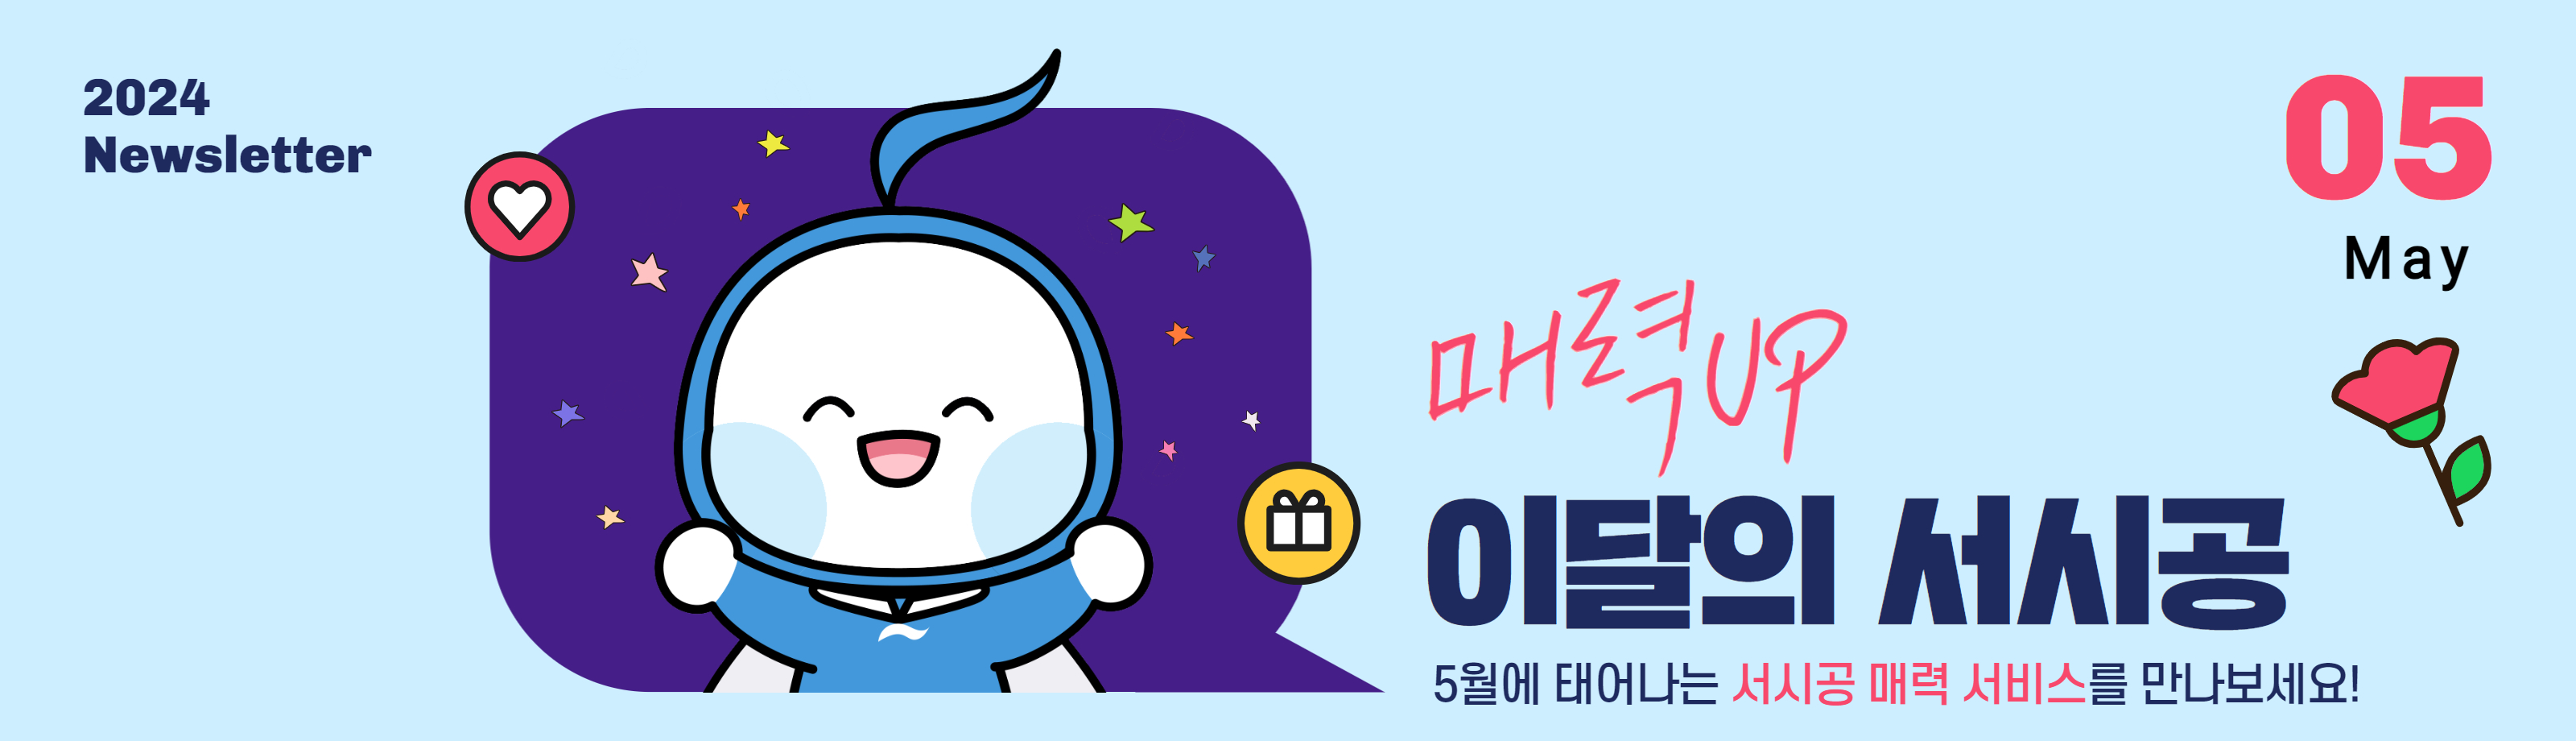 5월 서울의 매력 속으로 풍덩~ 서시공 다채로운 가족행사 개최